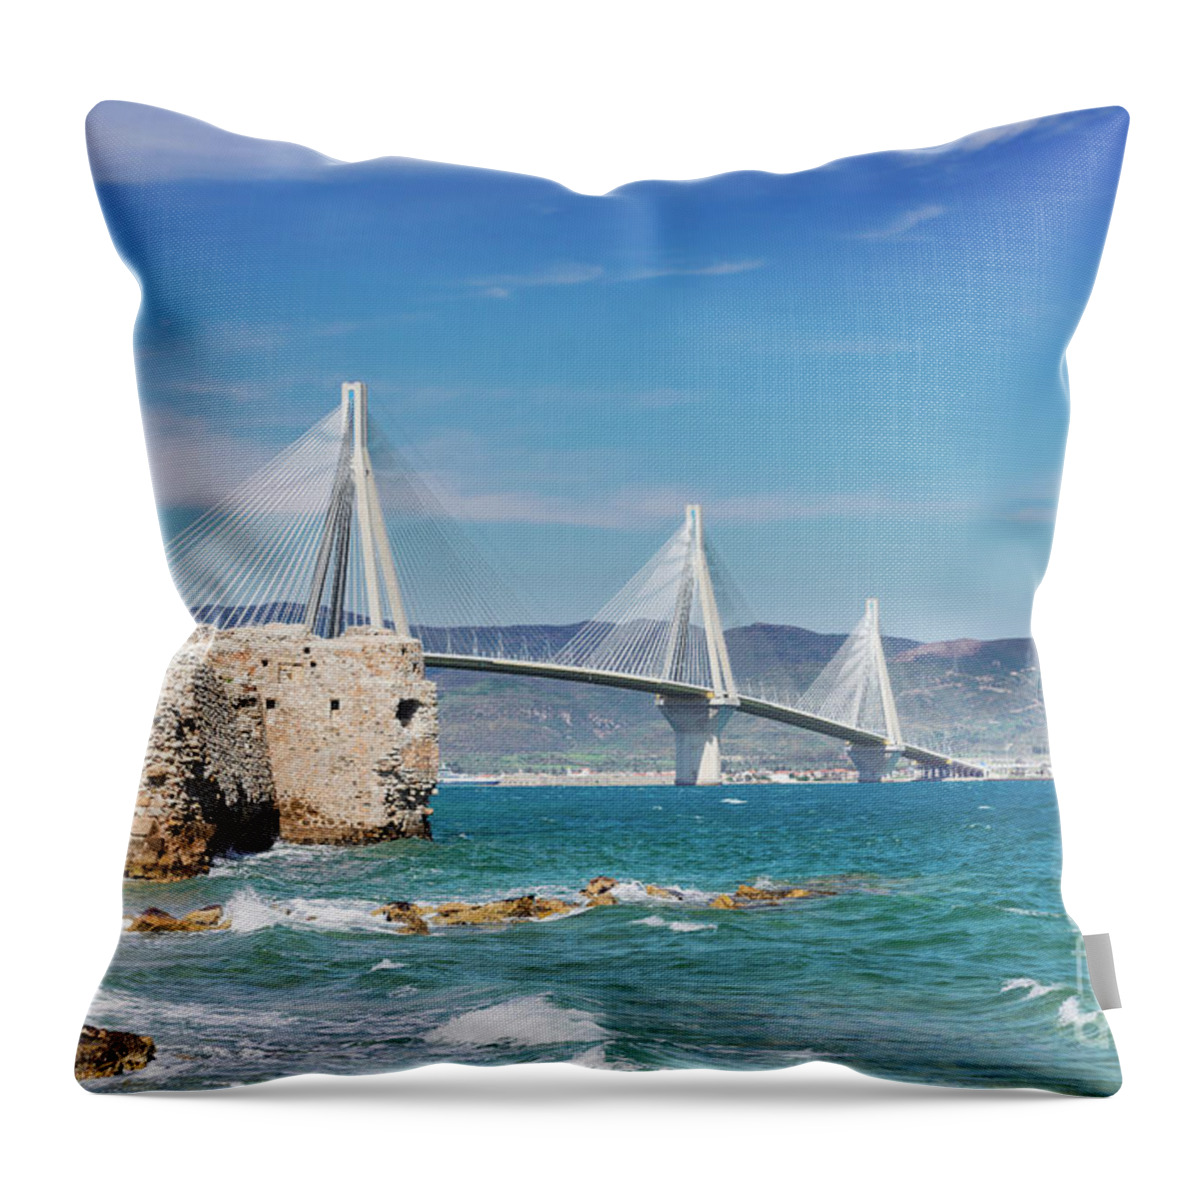 Patras Throw Pillow featuring the photograph Rio Antirrio Bridge by Anastasy Yarmolovich